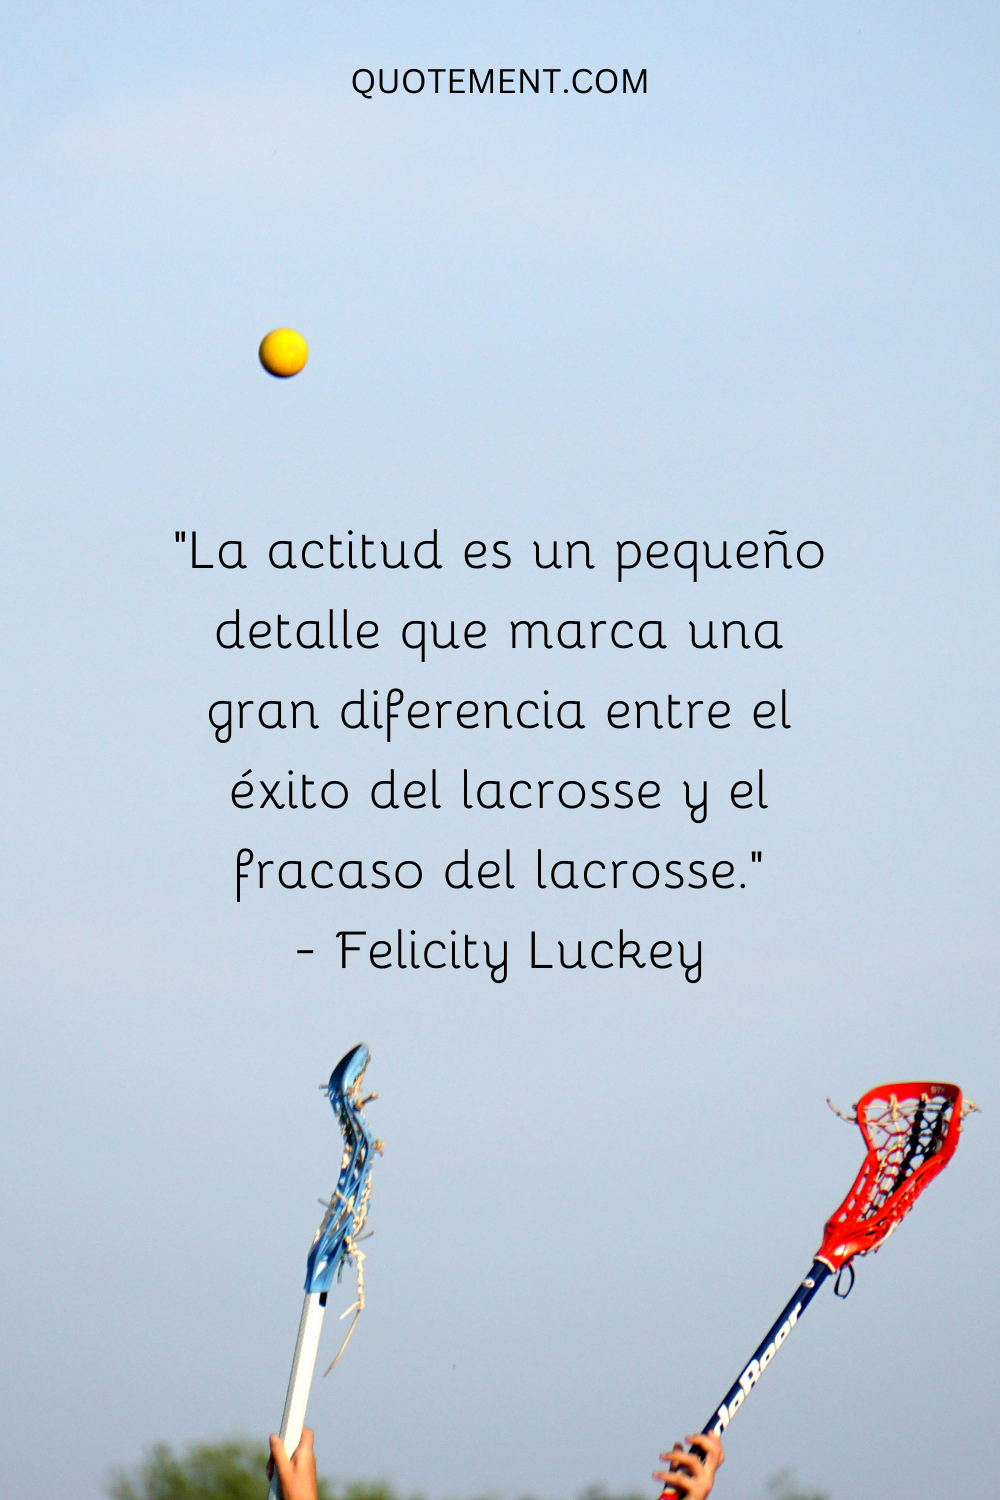 "La actitud es una pequeña cosa que marca una gran diferencia entre el éxito y el fracaso en el lacrosse". - Felicity Luckey